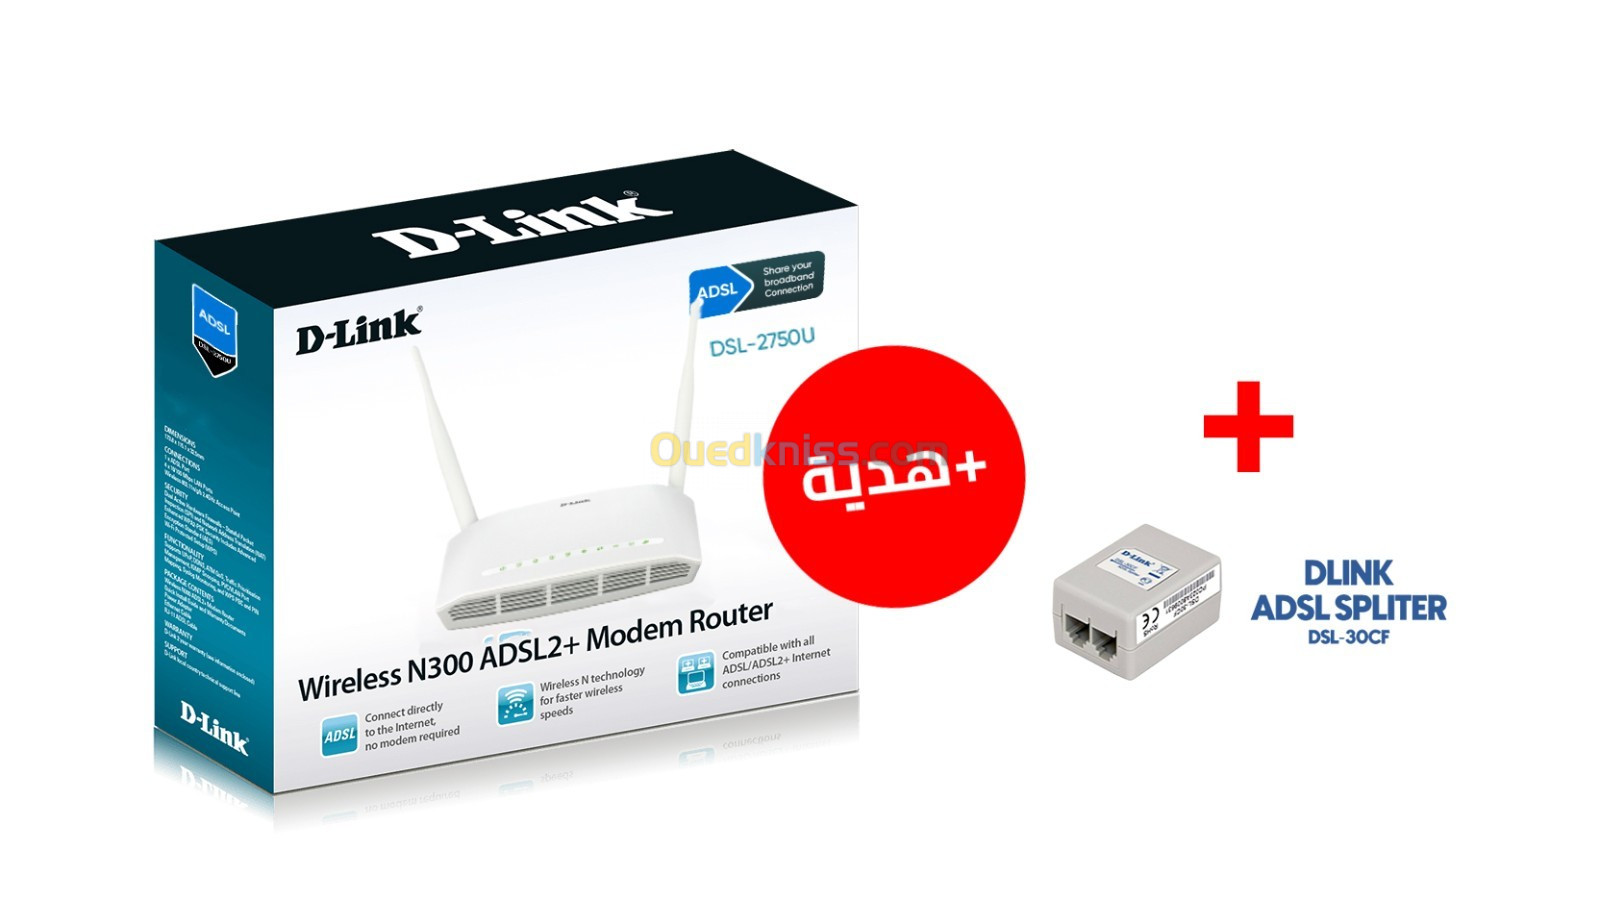 D-LINK DSL-2750U ADSL2+ Modem Router